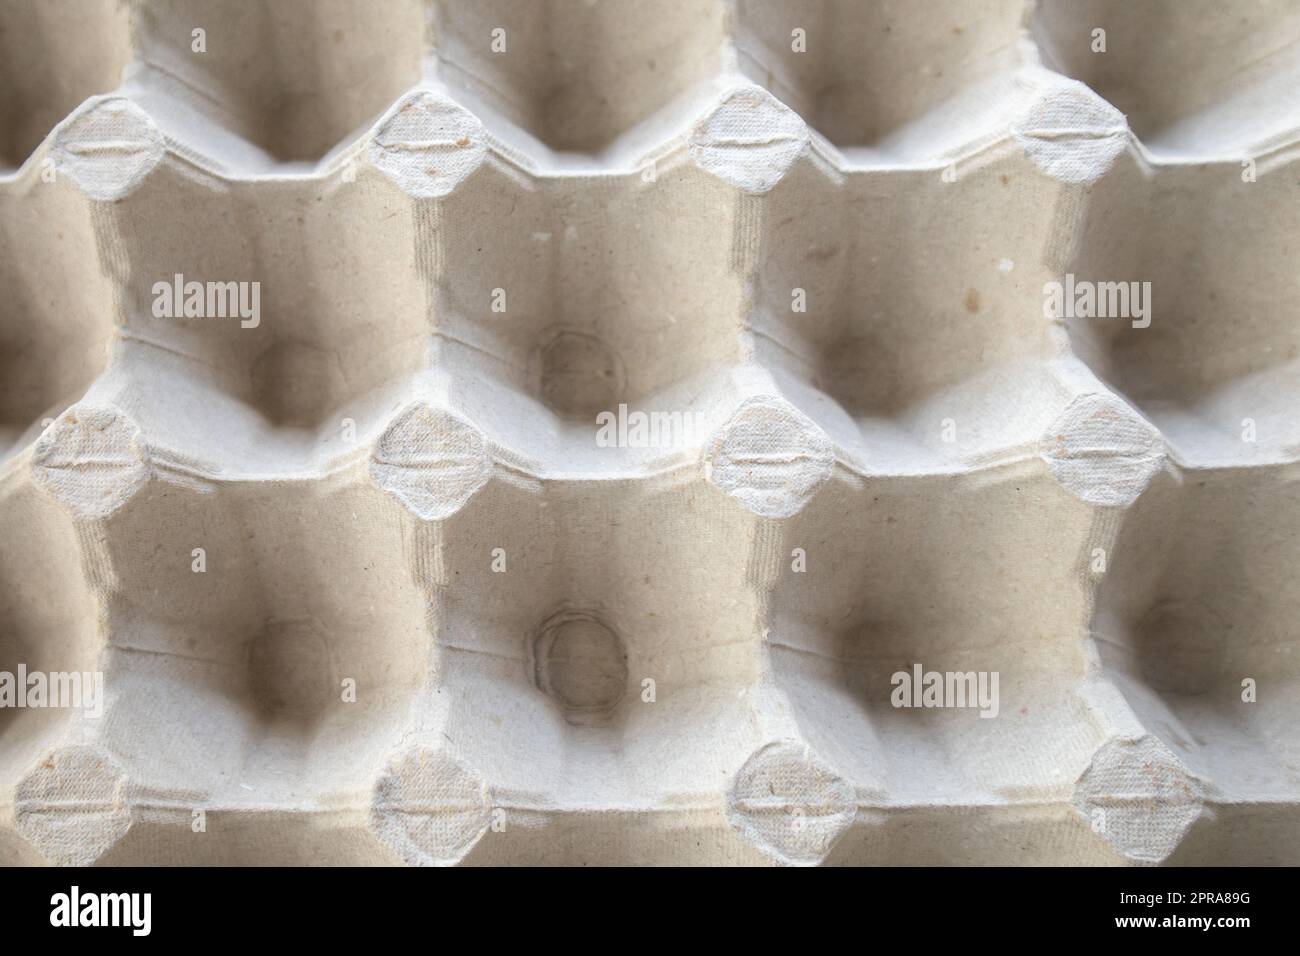 Draufsicht auf ein leeres Eiertablett aus Pappe Hintergrundtextur eines Behälters aus biologisch abbaubarer Papierverpackung mit einem sich wiederholenden Muster Stockfoto